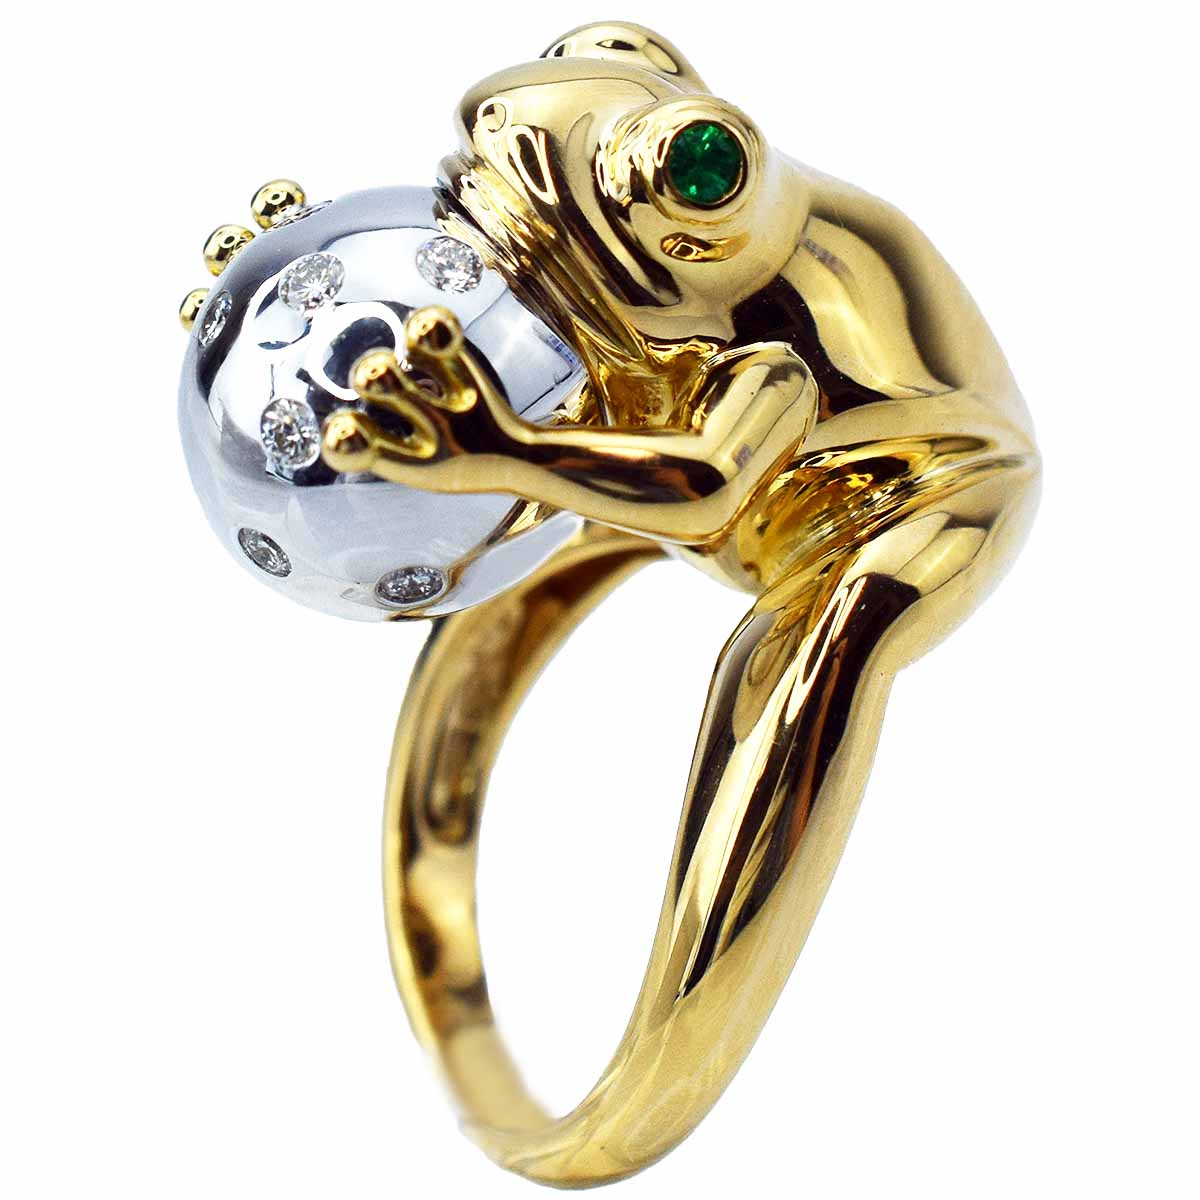 売れ筋新商品 アニマルコレクション ダイヤ カエル 約8号 WG YG K18 750 リング 指輪